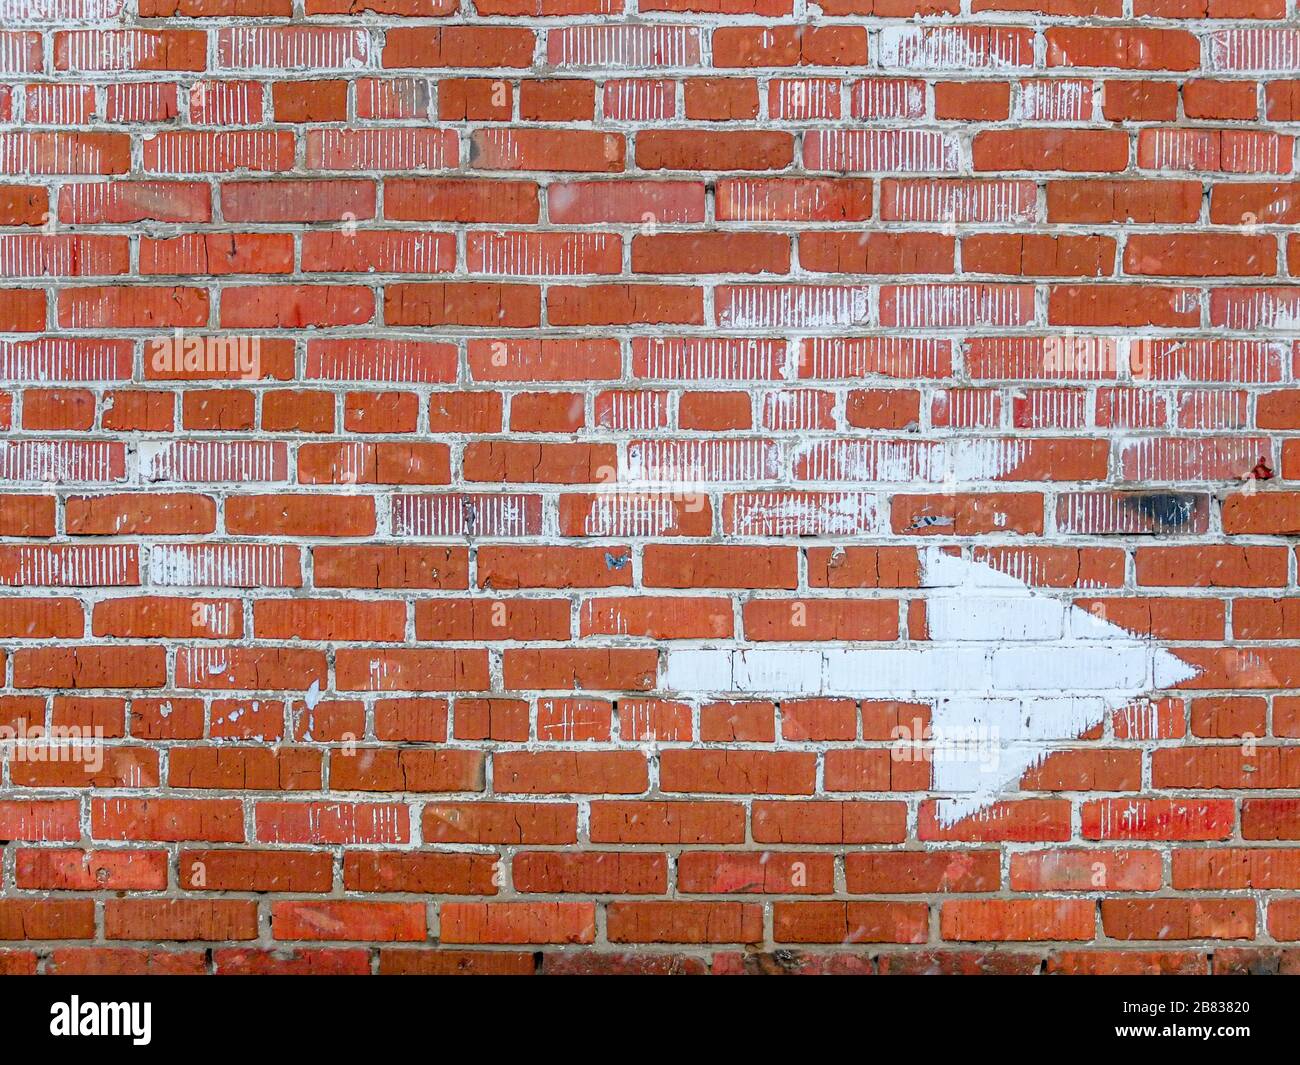 Un vieux mur de briques rouges avec des traces de peinture blanche et une grande flèche blanche dessinée pour indiquer la direction Banque D'Images